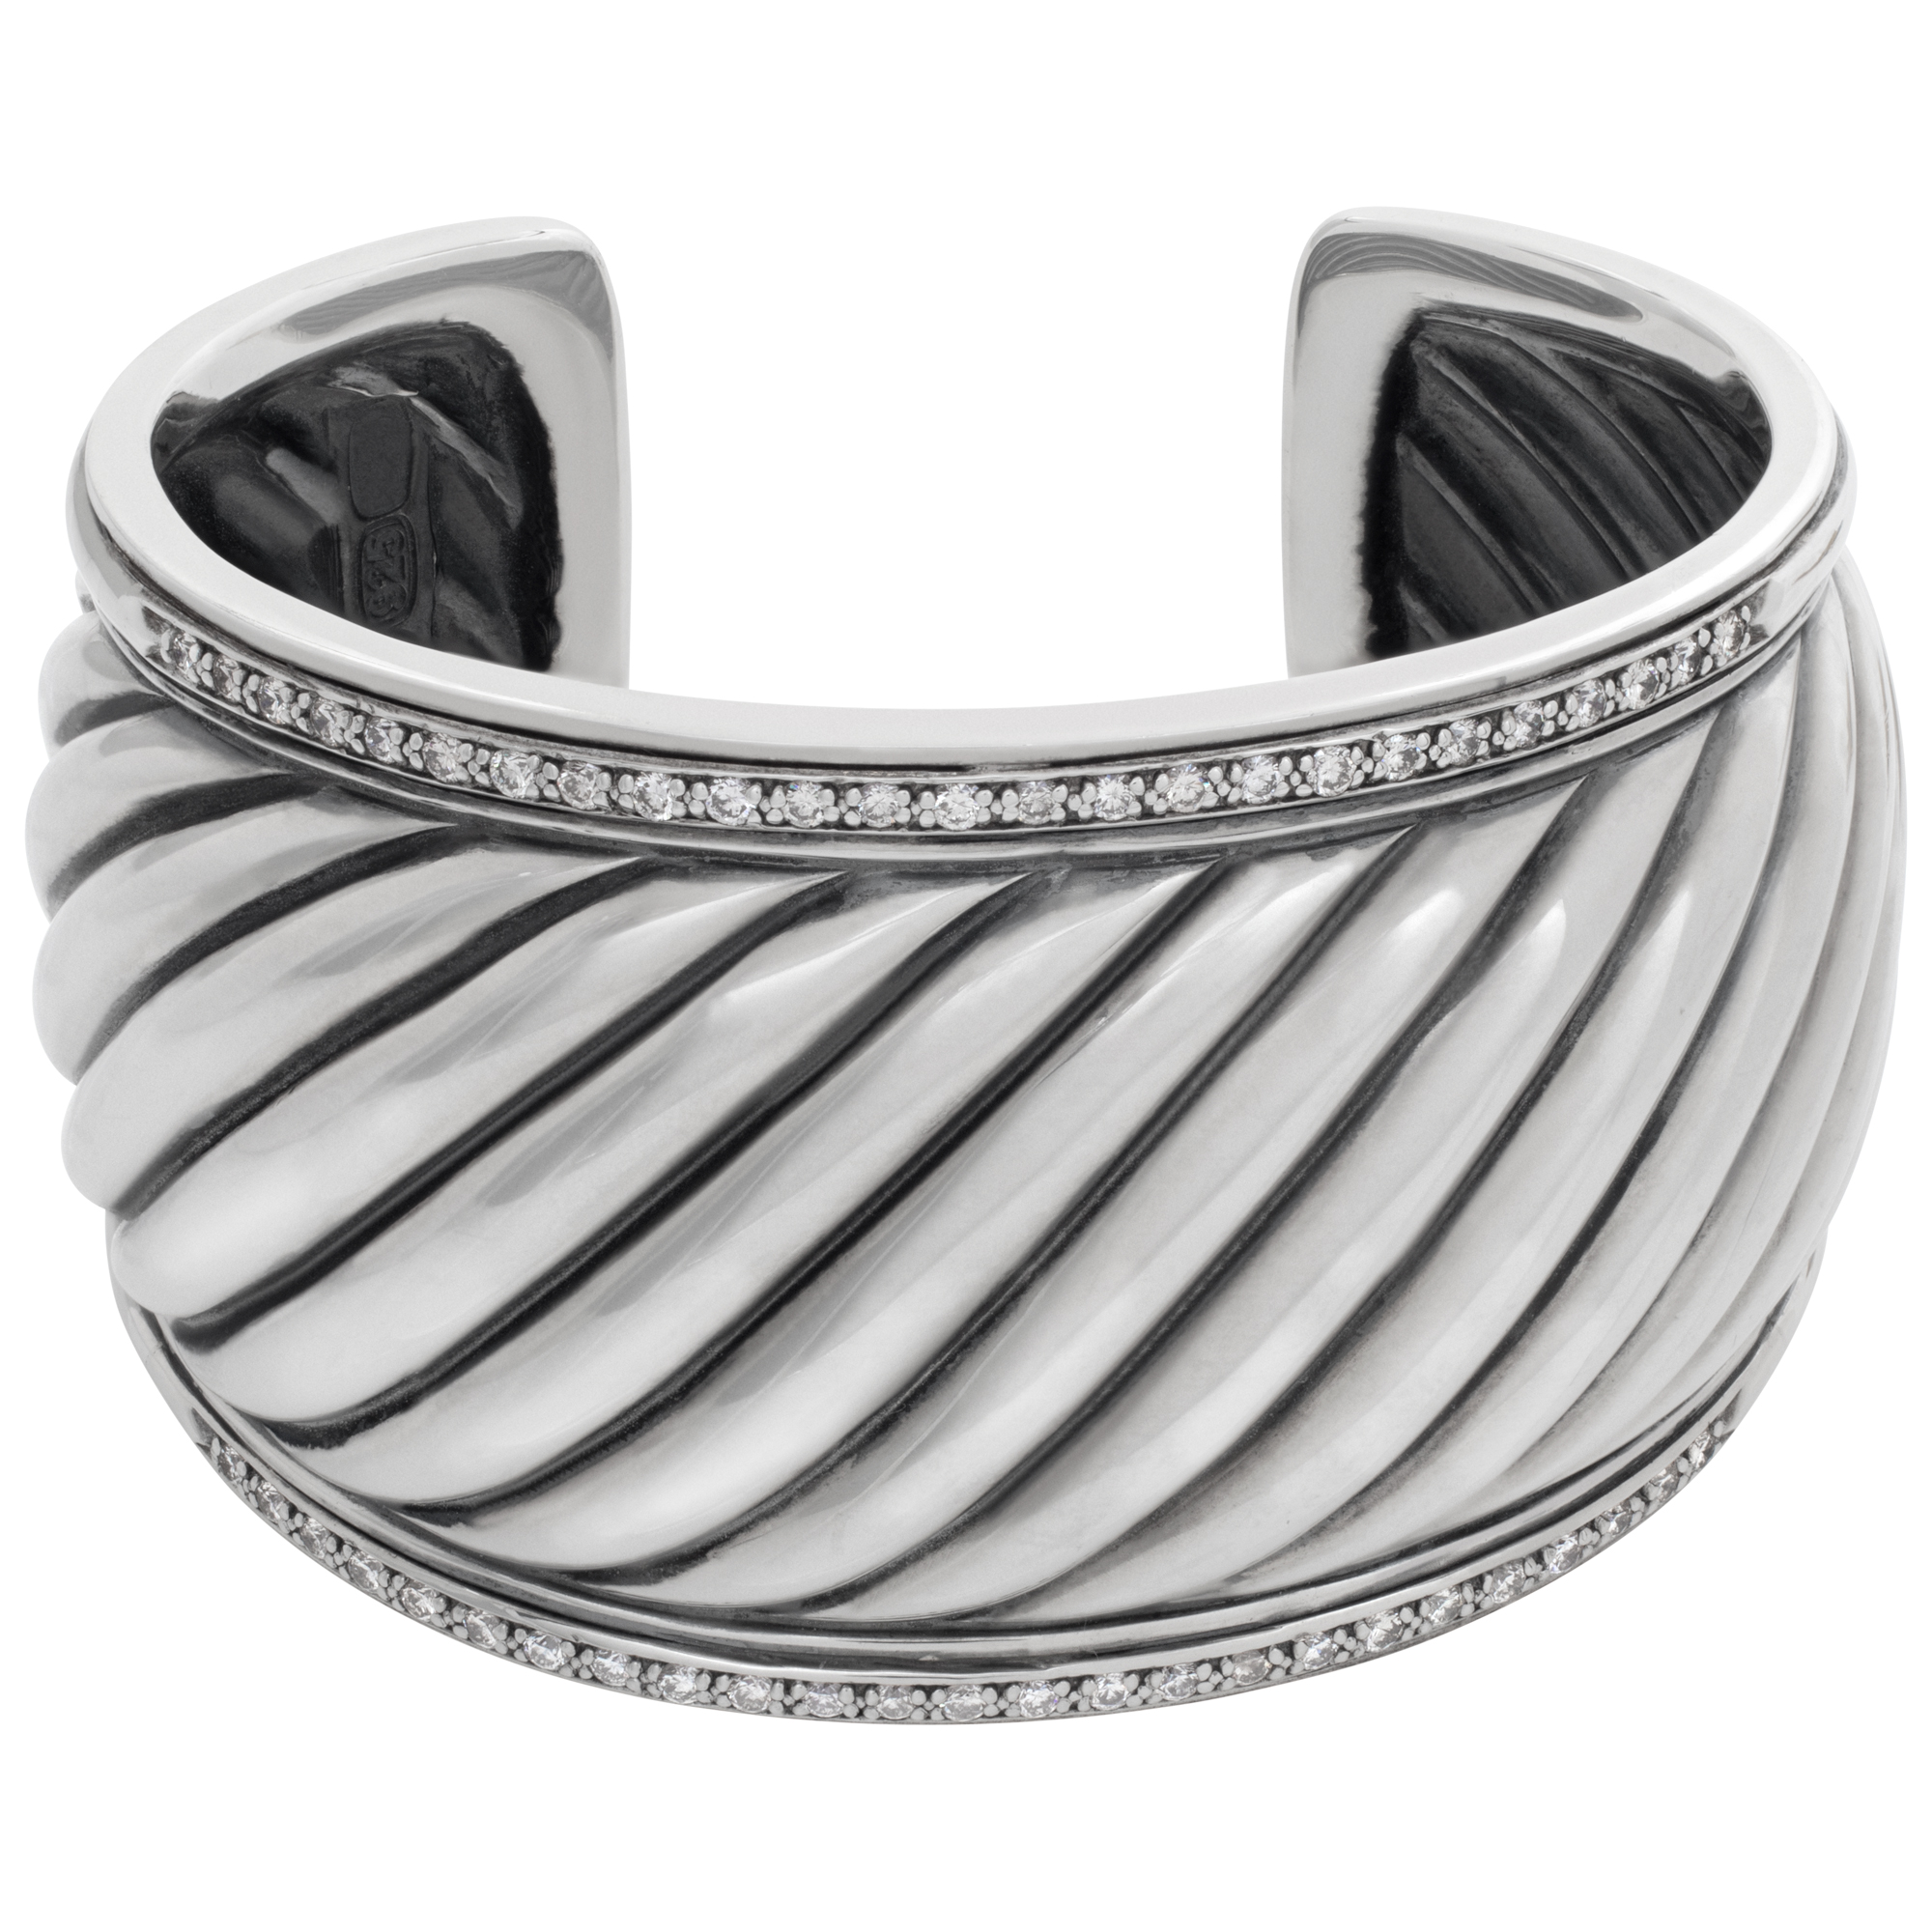 David Yurman diamond fluted wide sterling silver cuff bracelet